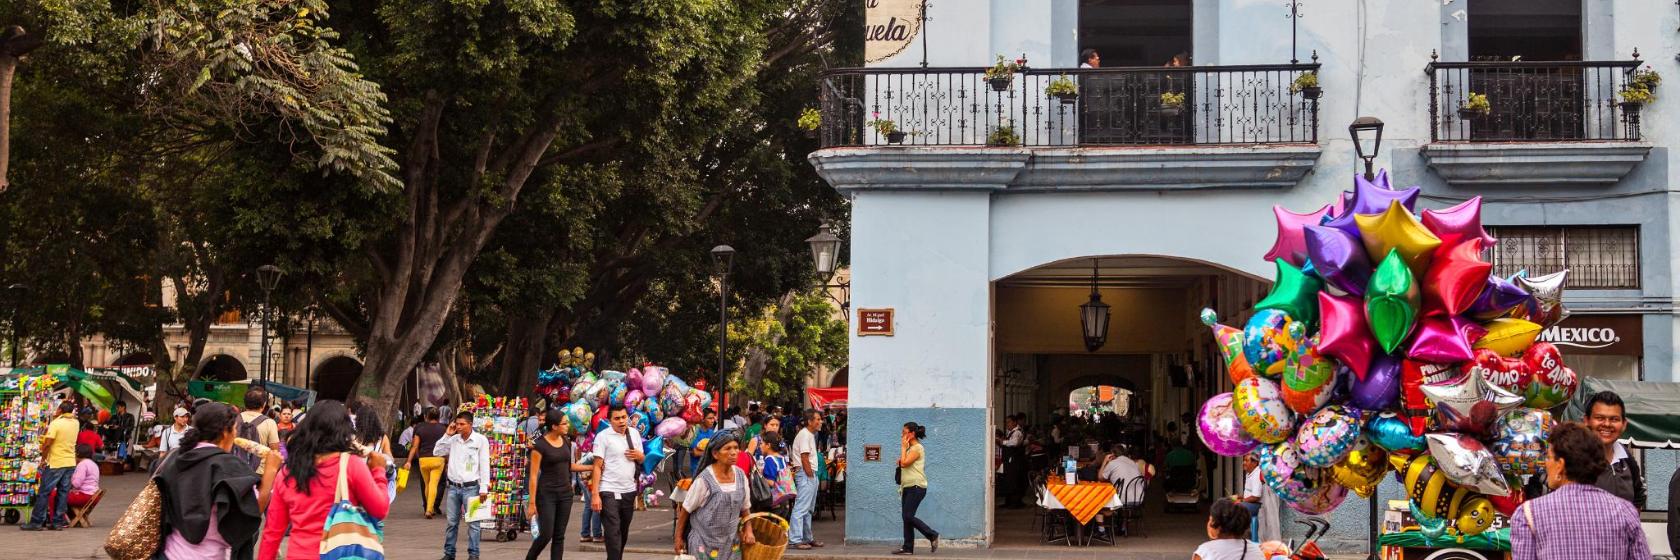 The 10 best hotels near Downtown Oaxaca de Juarez in Oaxaca City, Mexico